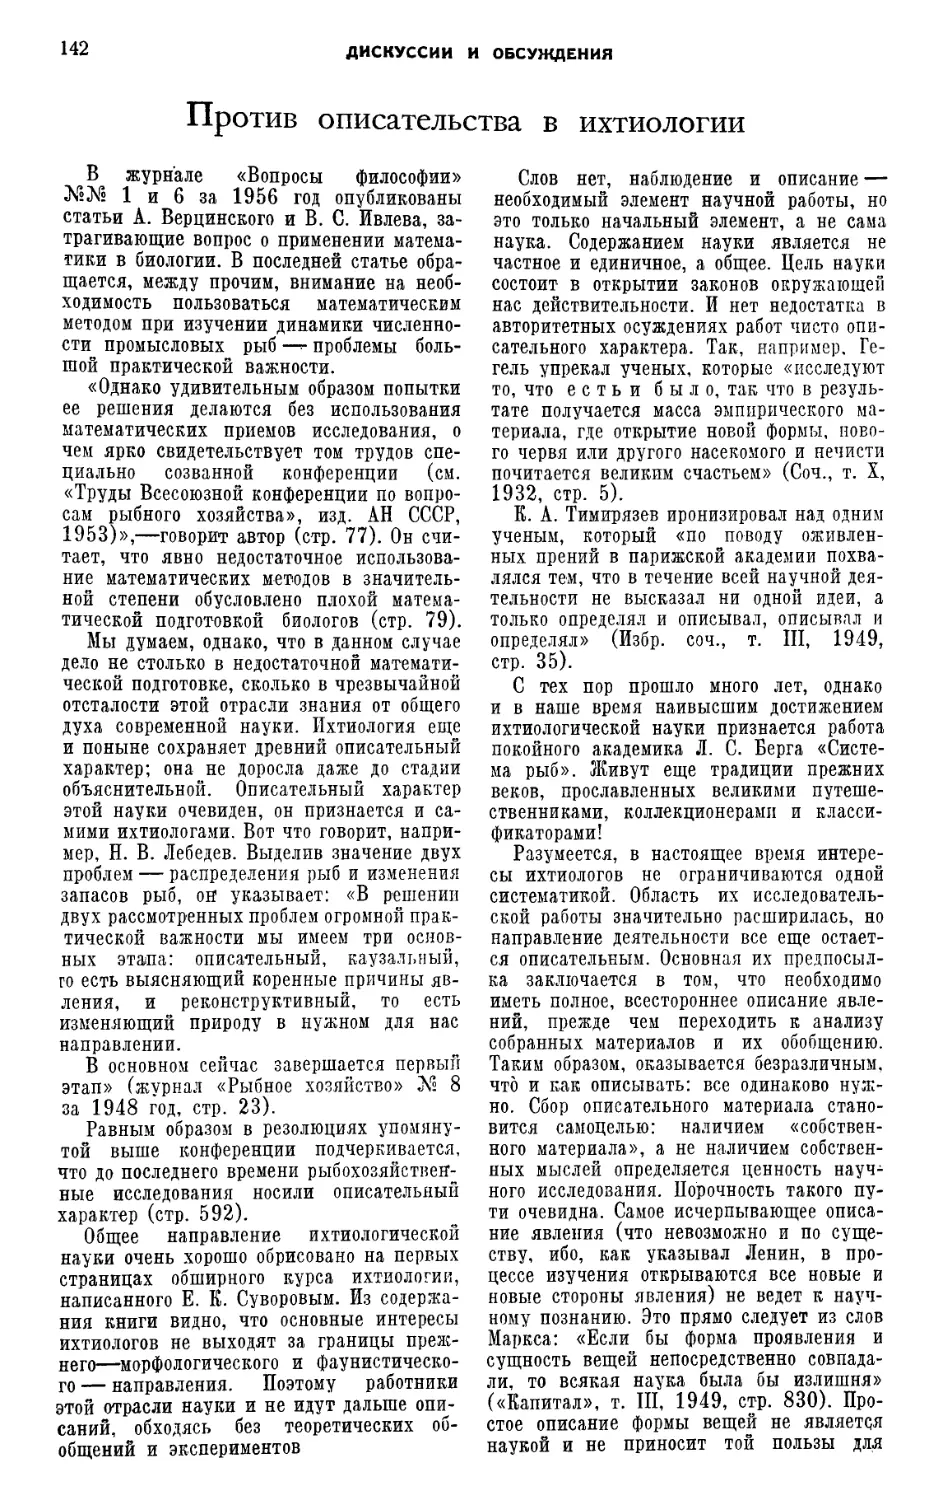 Ф. И. Баранов — Против описательства в ихтиологии